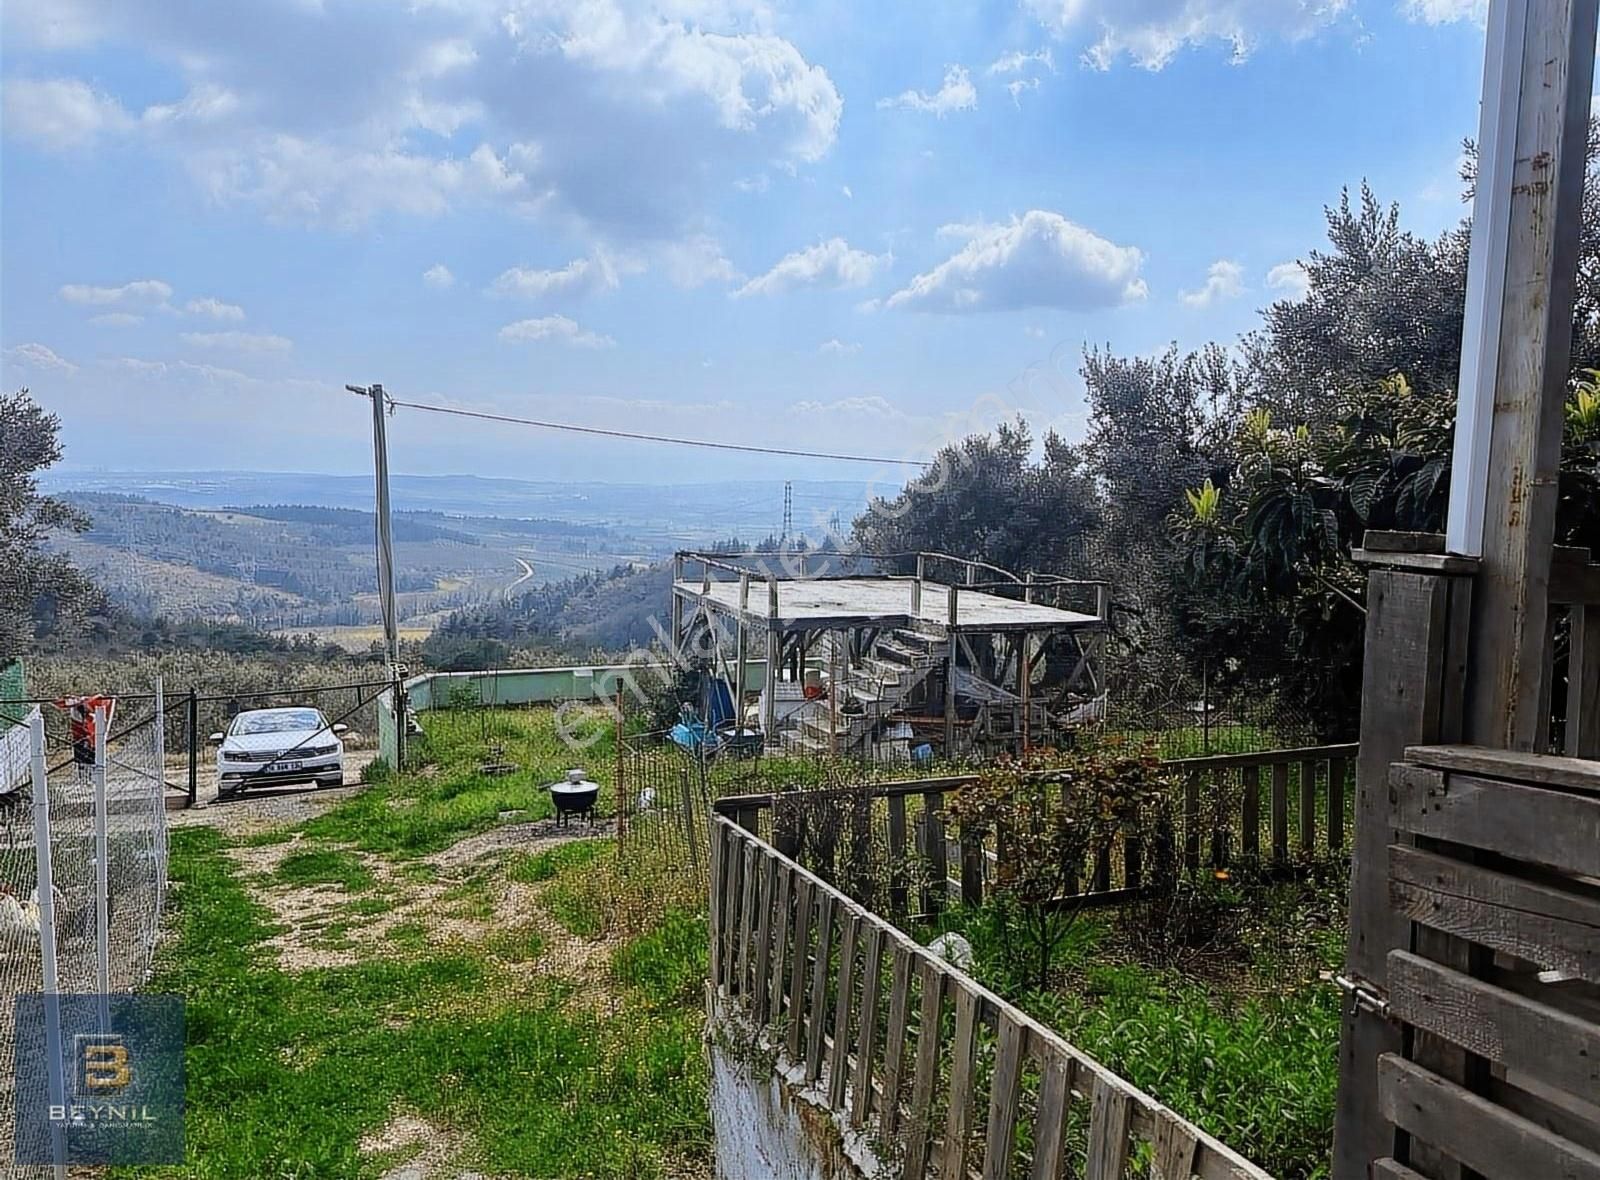 Mudanya Yaylacık Satılık Tarla Beynil'den Mudanya Yaylacık Köyünde Satılık 2 Adet Hobi Bahçesi